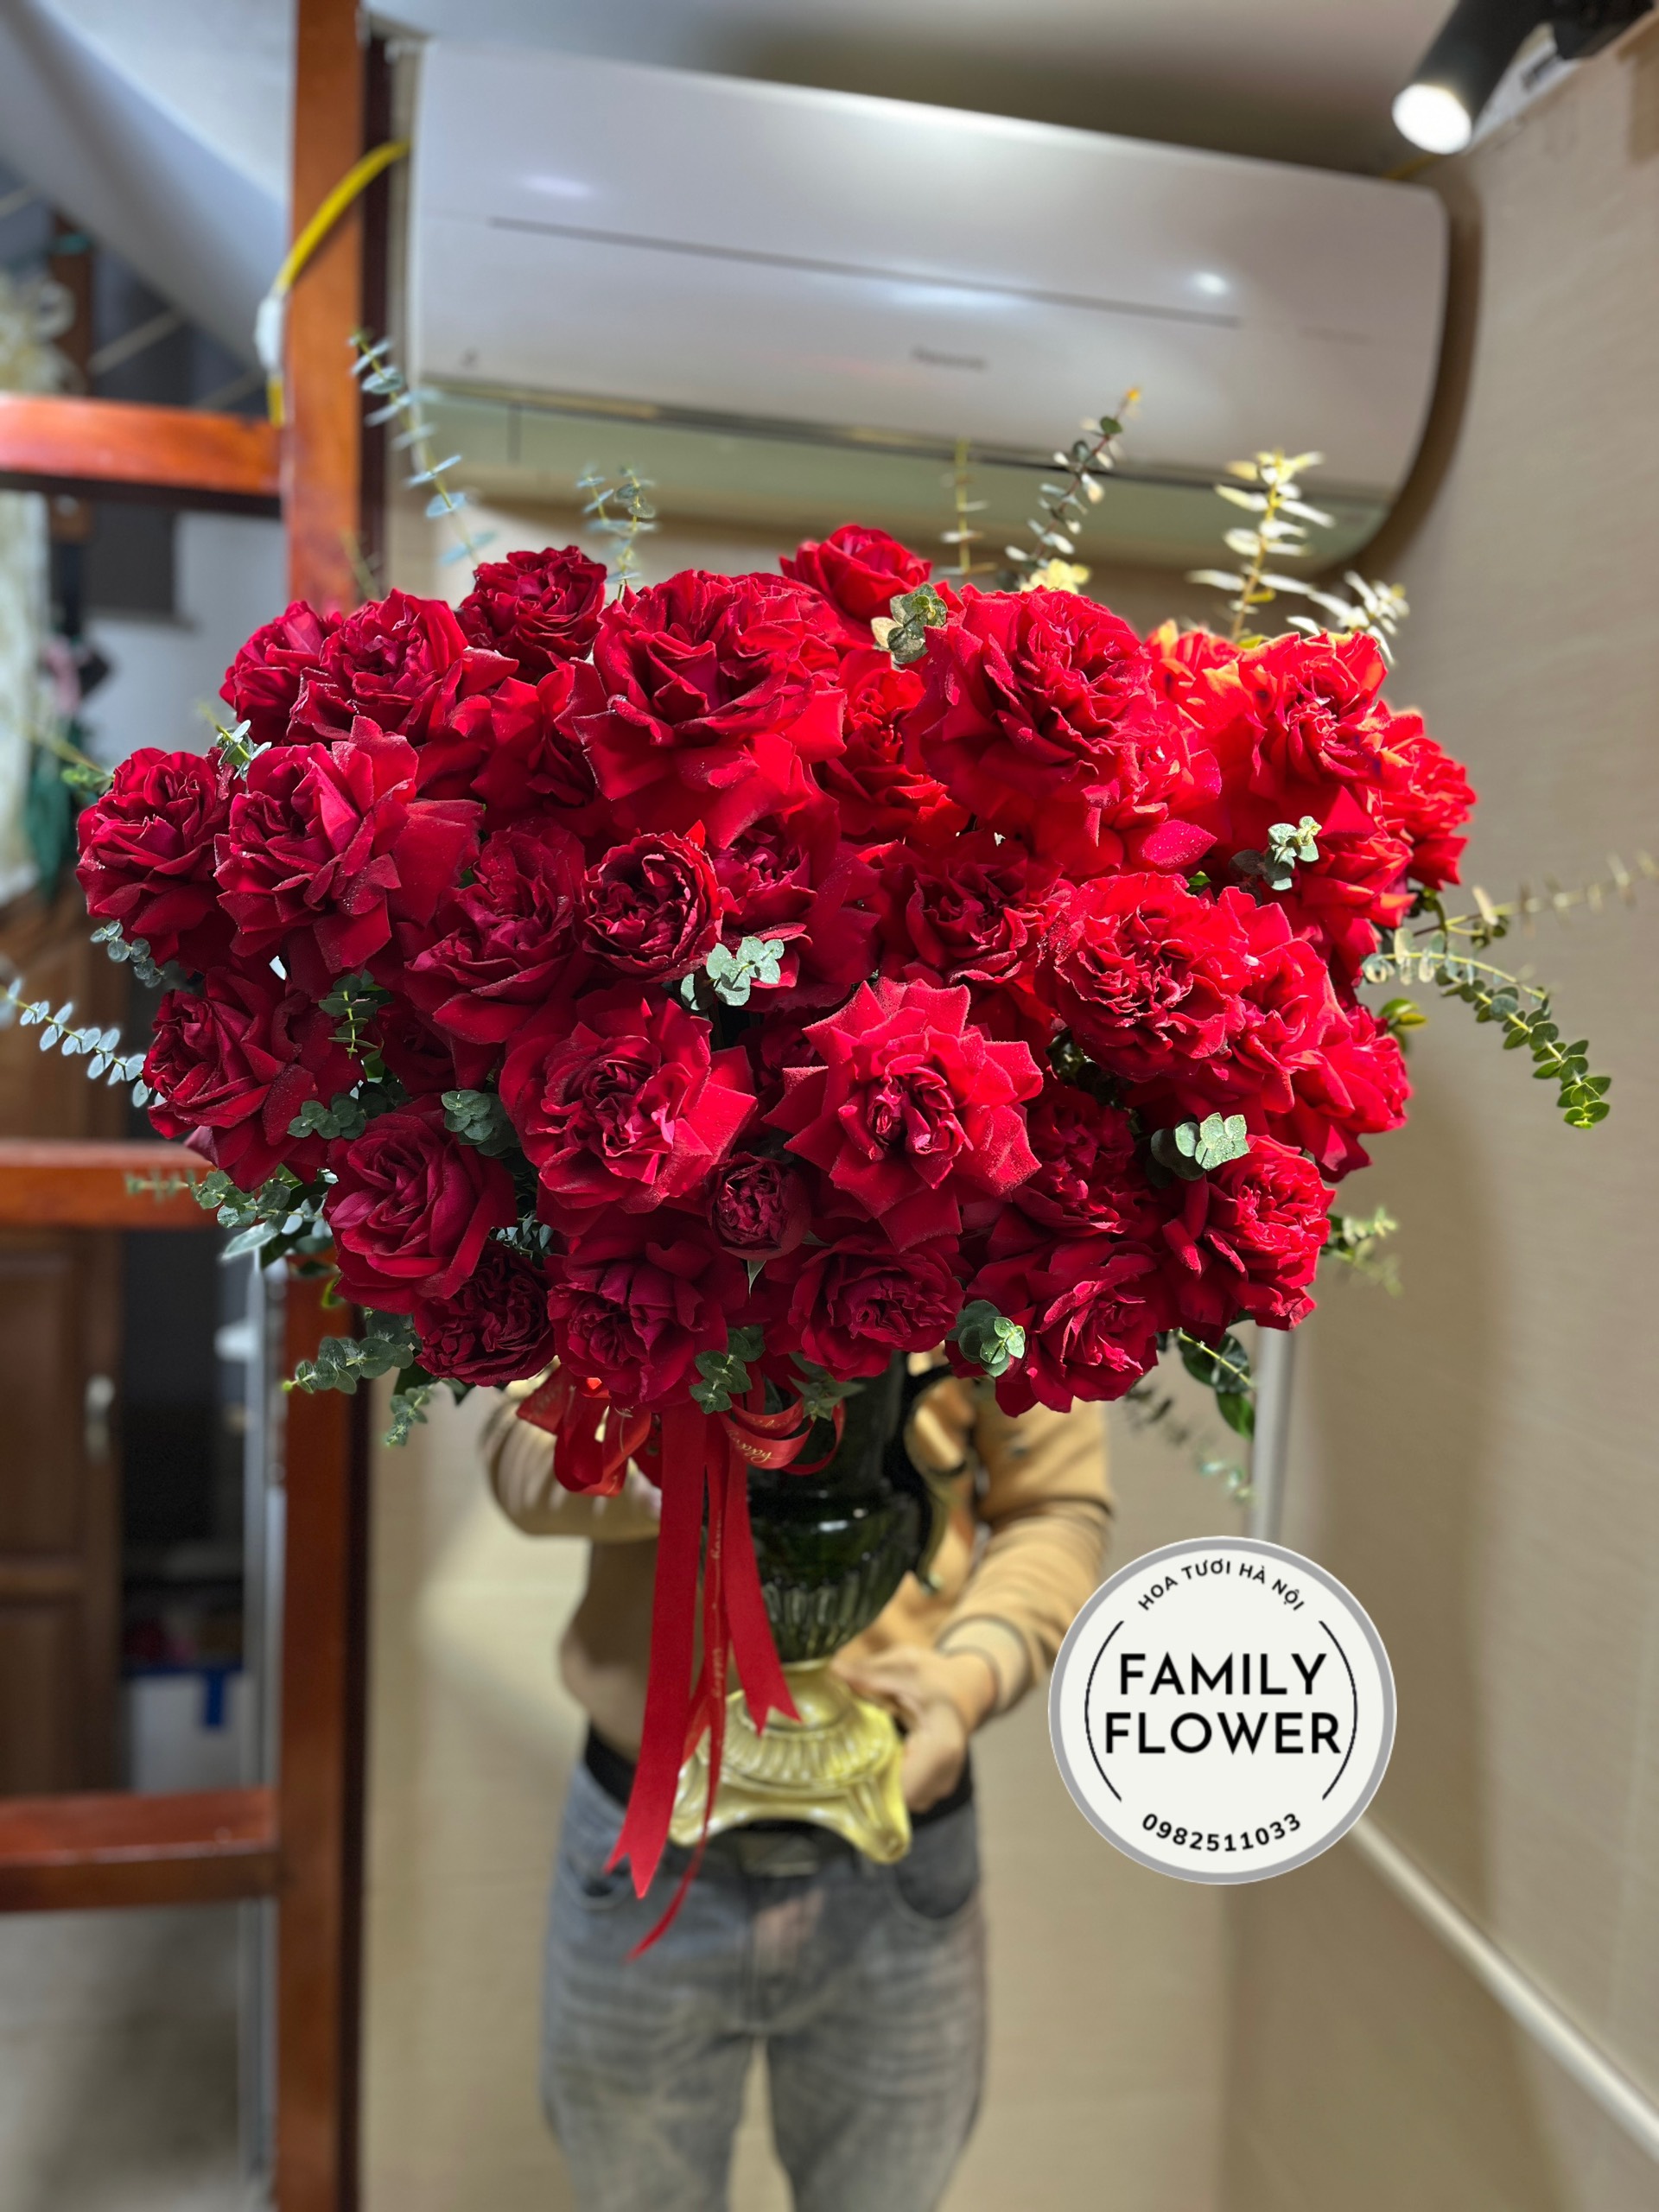 Bình hoa hồng đỏ tặng đối tác nhân dịp mùng 8 tháng 3 ! Mua hoa 8 tháng 3